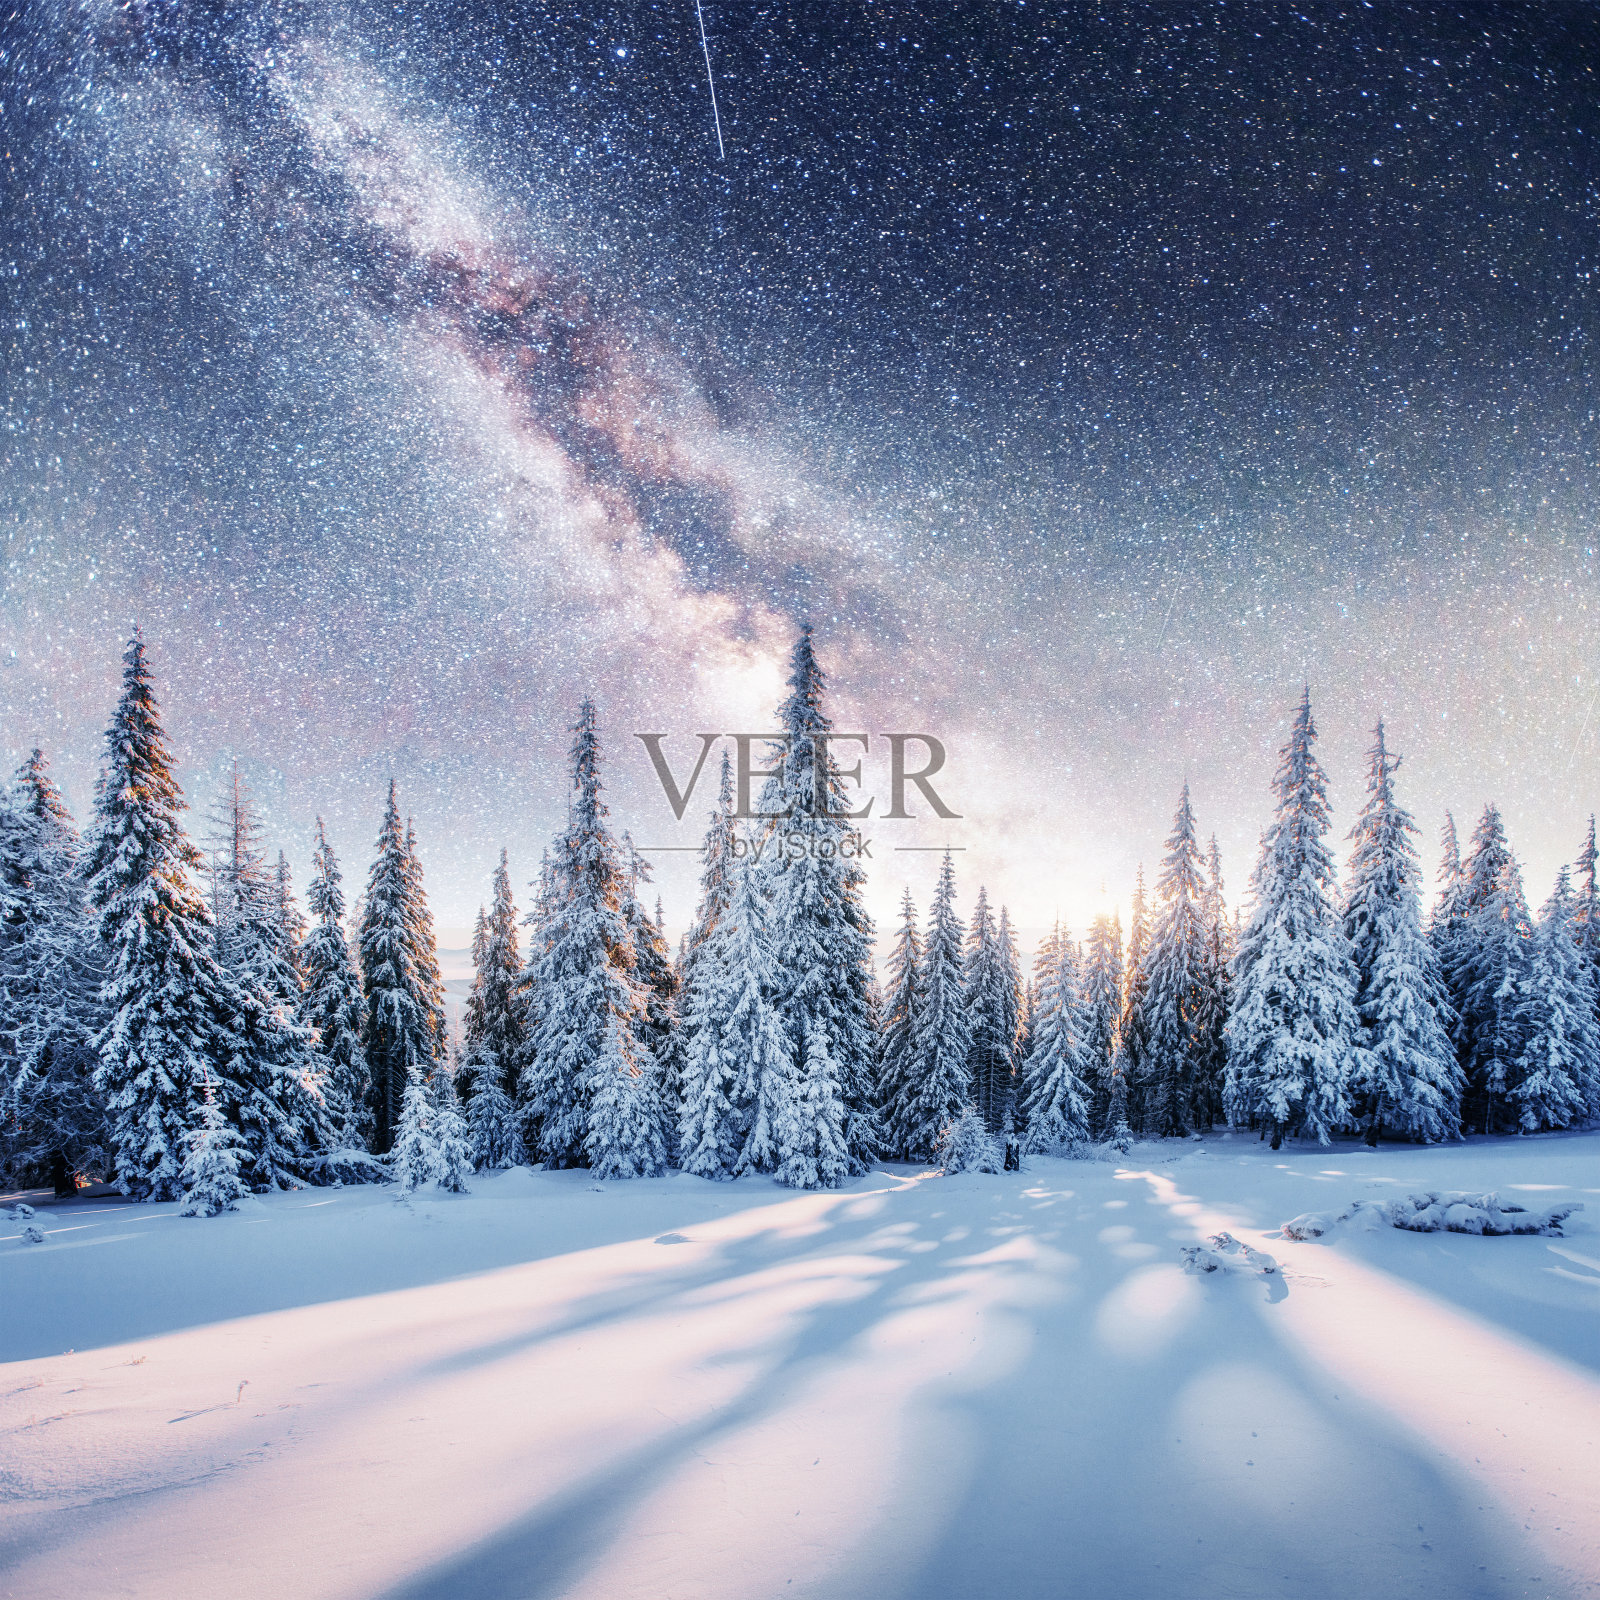 《星际迷航》里冬天的树林。戏剧性和风景如画的sc照片摄影图片